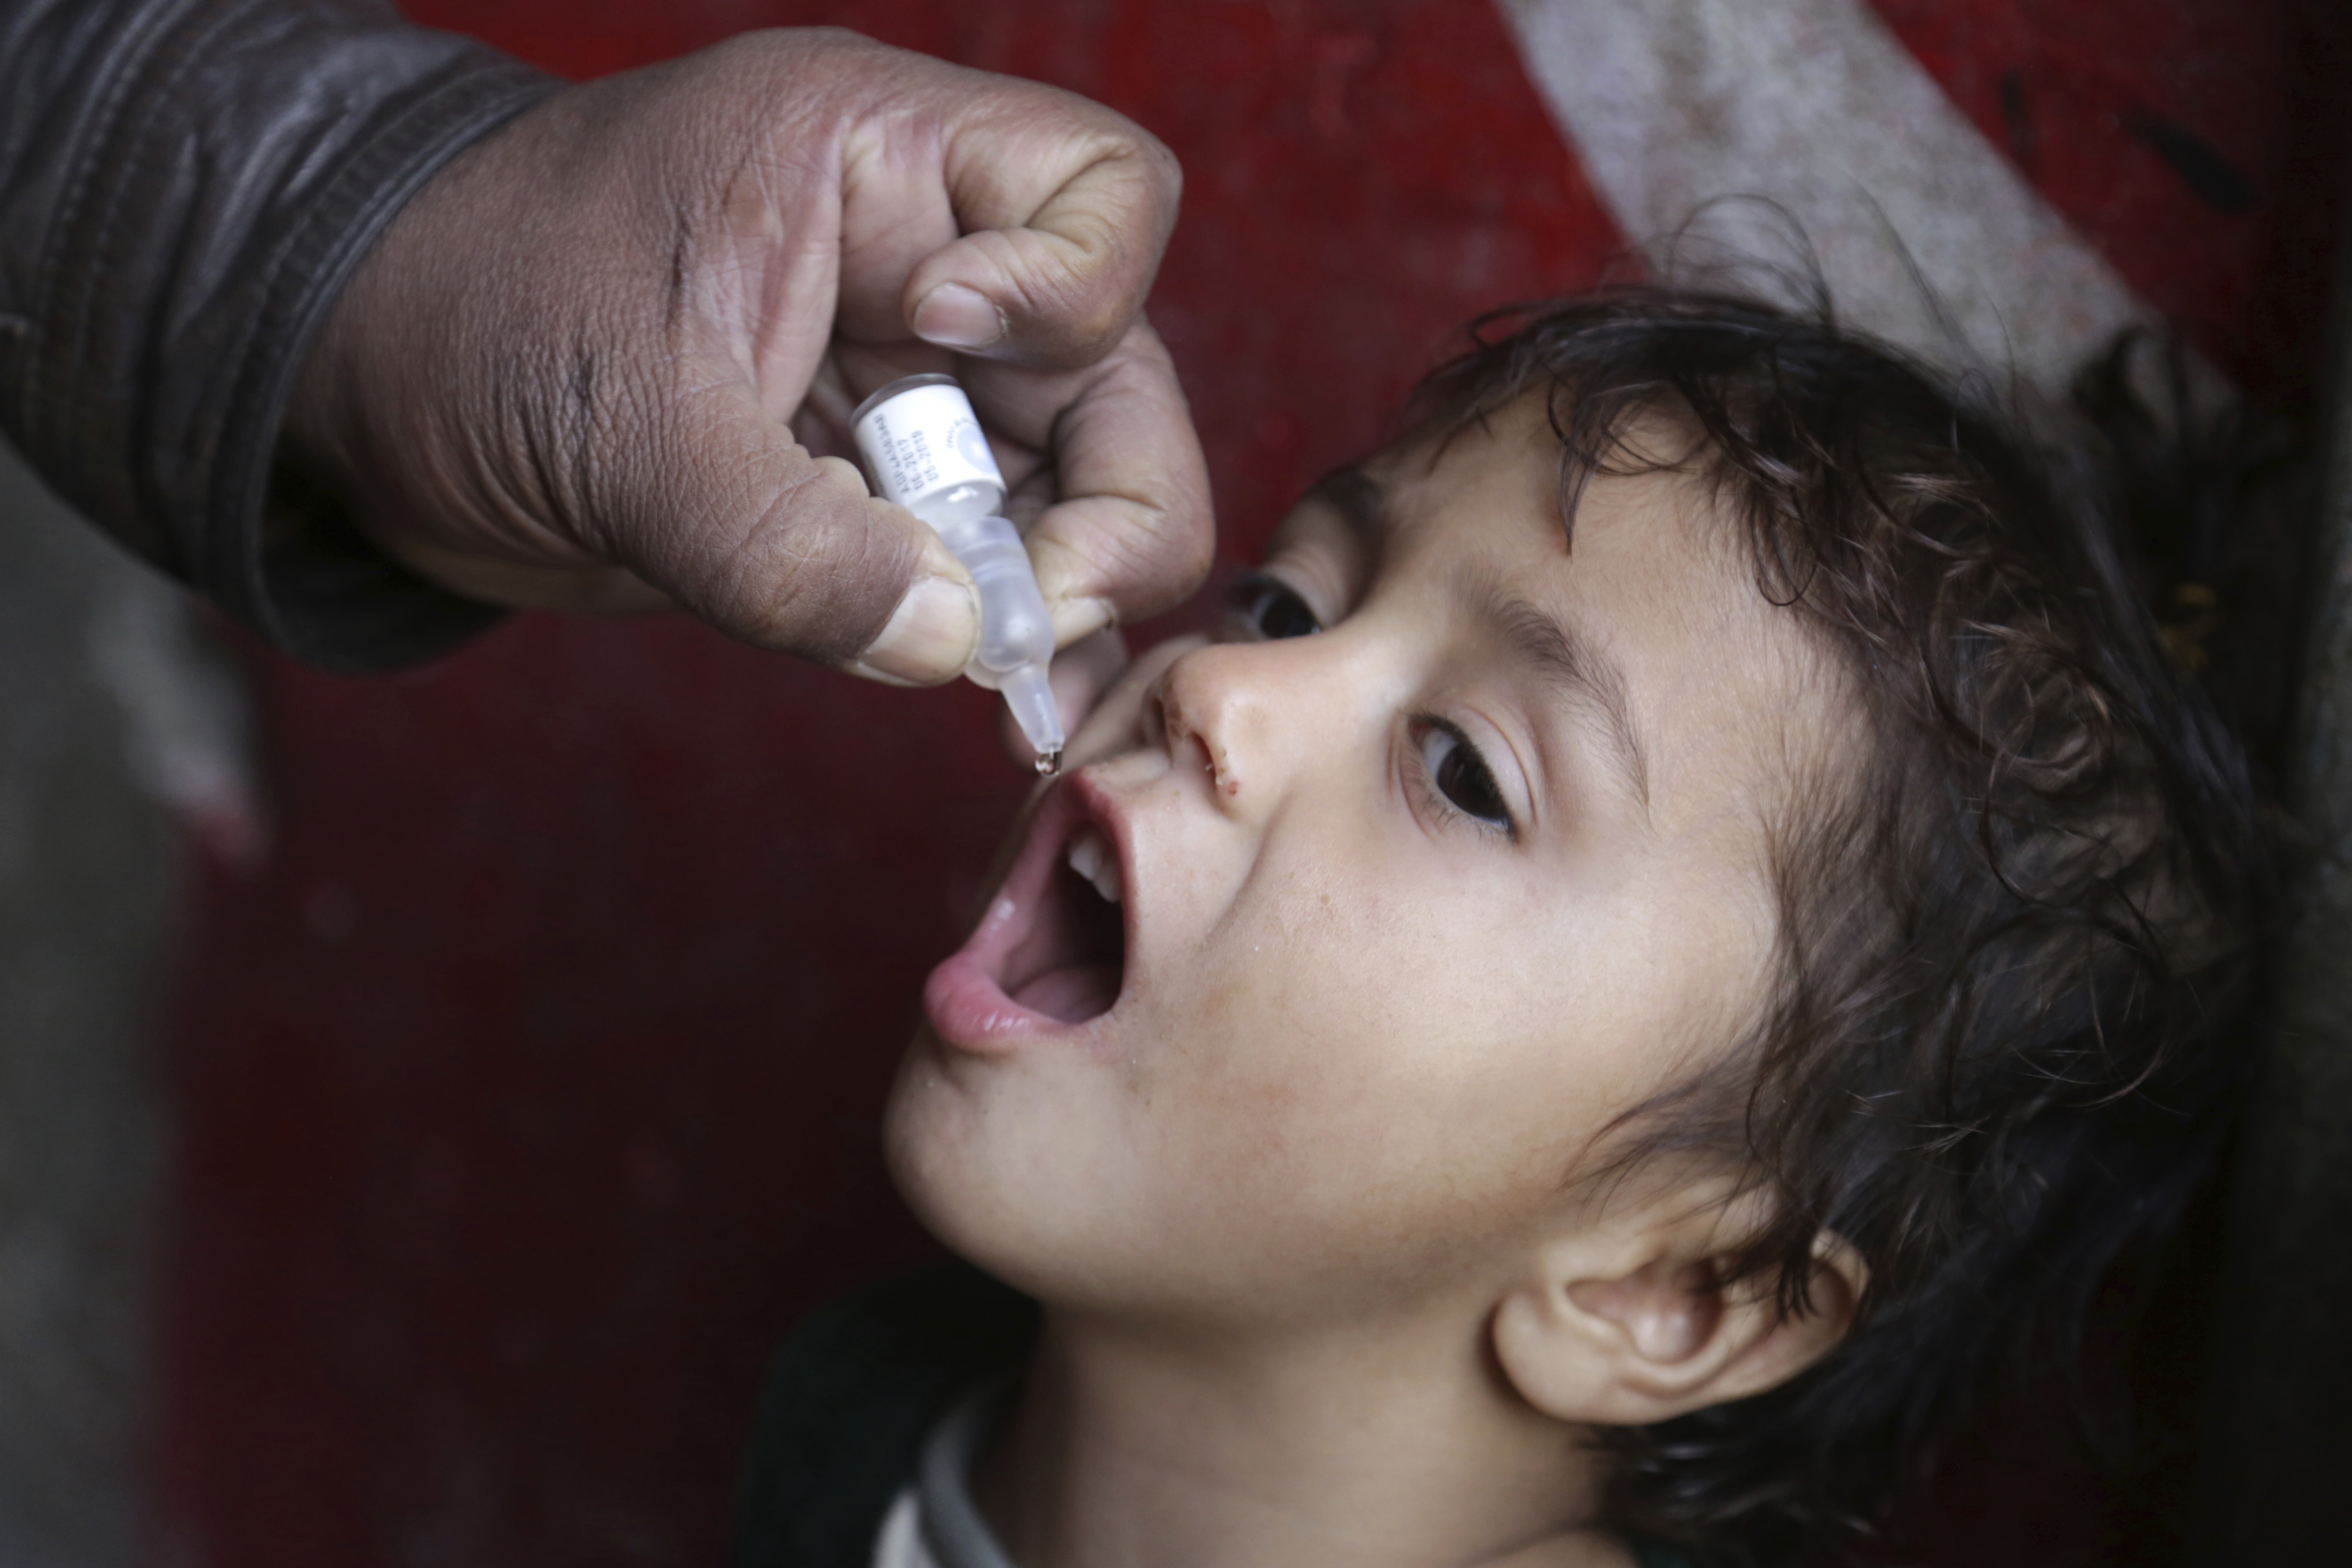 Vaccinazioni antipolio in Pakistan nonostante le mainacce talebane